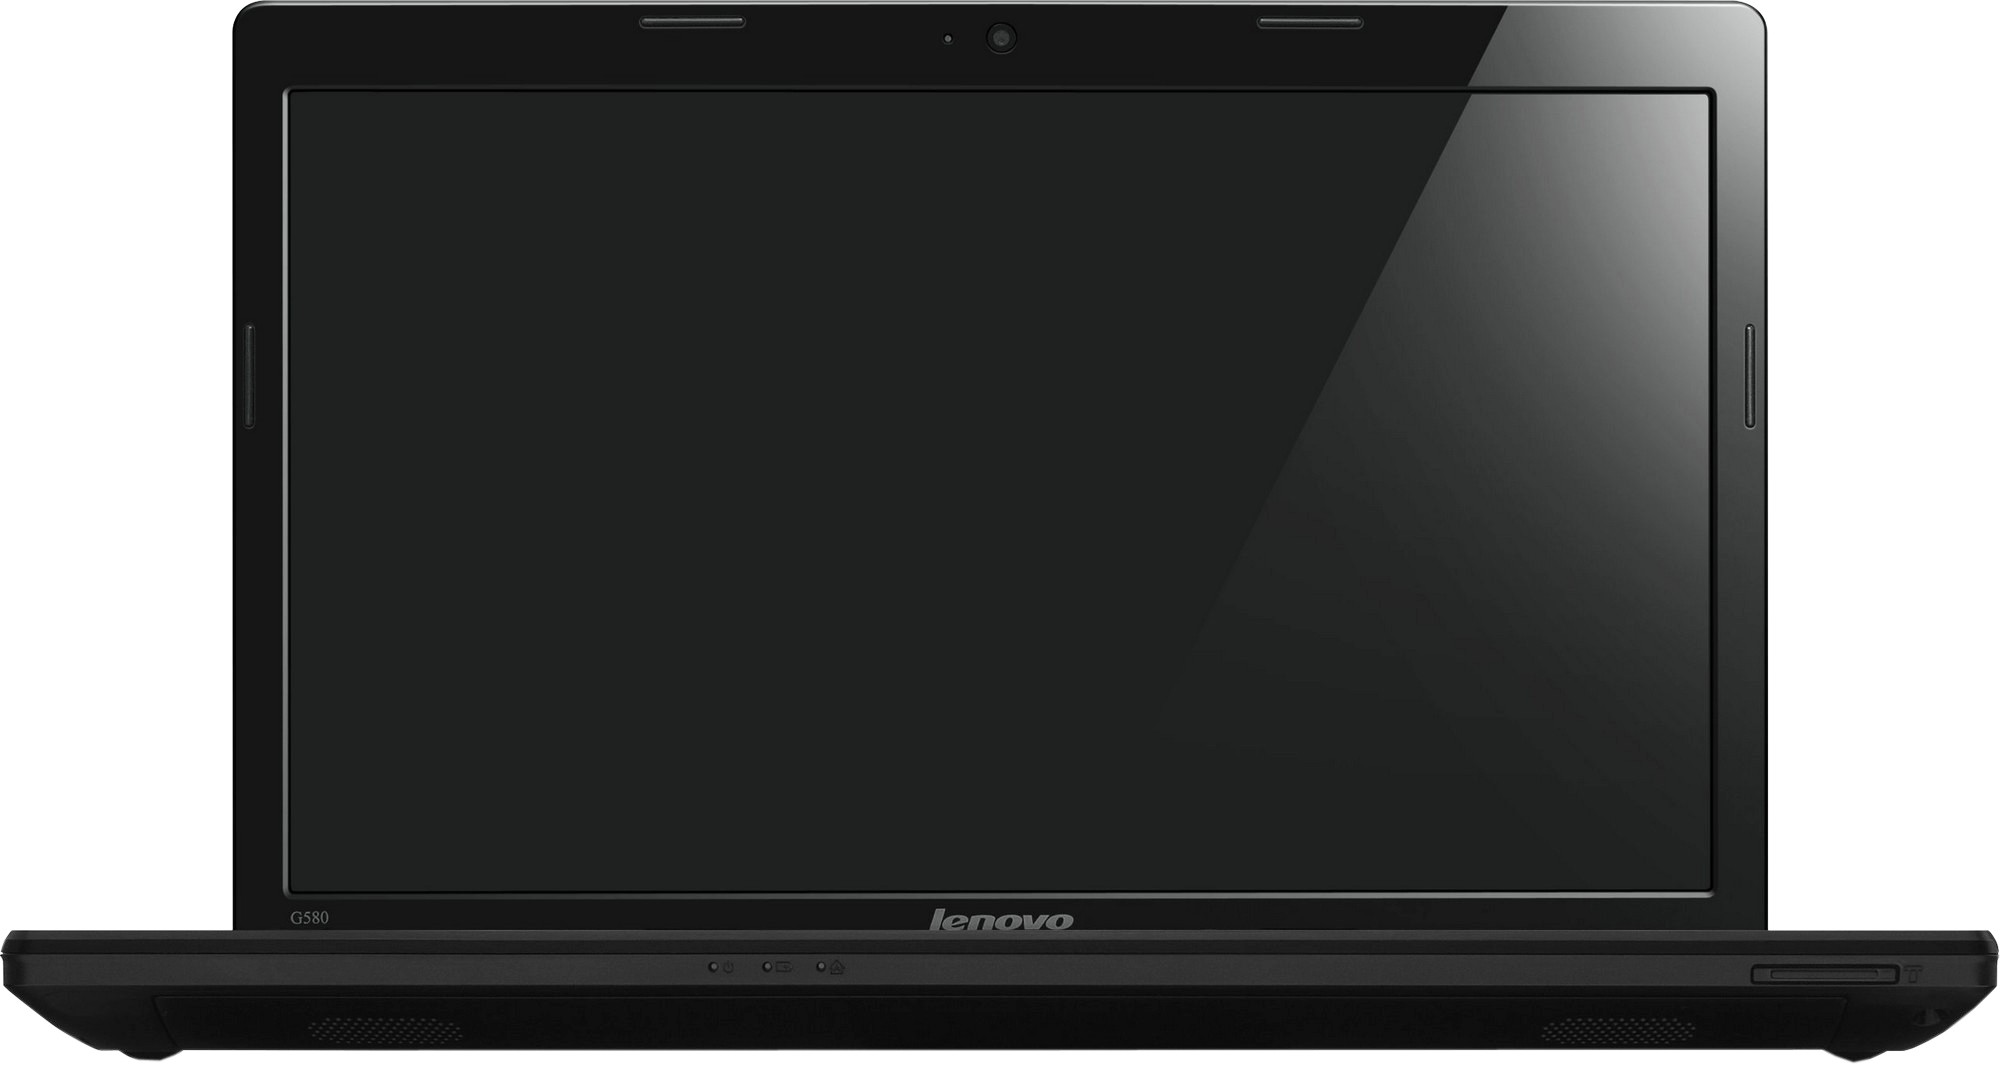 Ноутбук Lenovo Ideapad G580 Купить В Украине